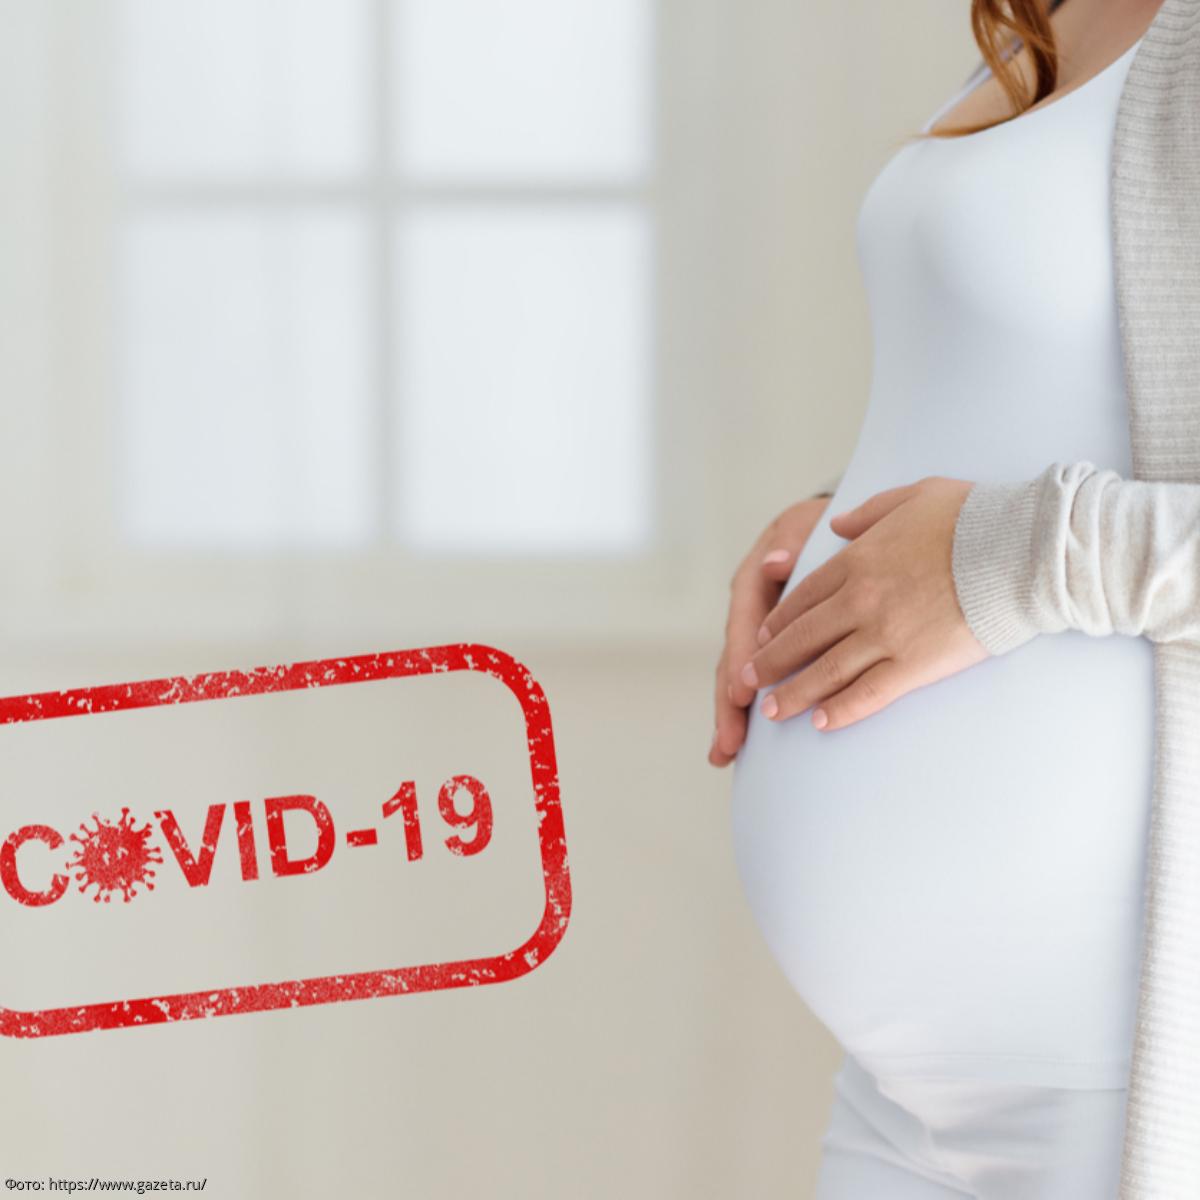 COVID-19 и беременность: что мы знаем о том, что происходит с иммунной системой